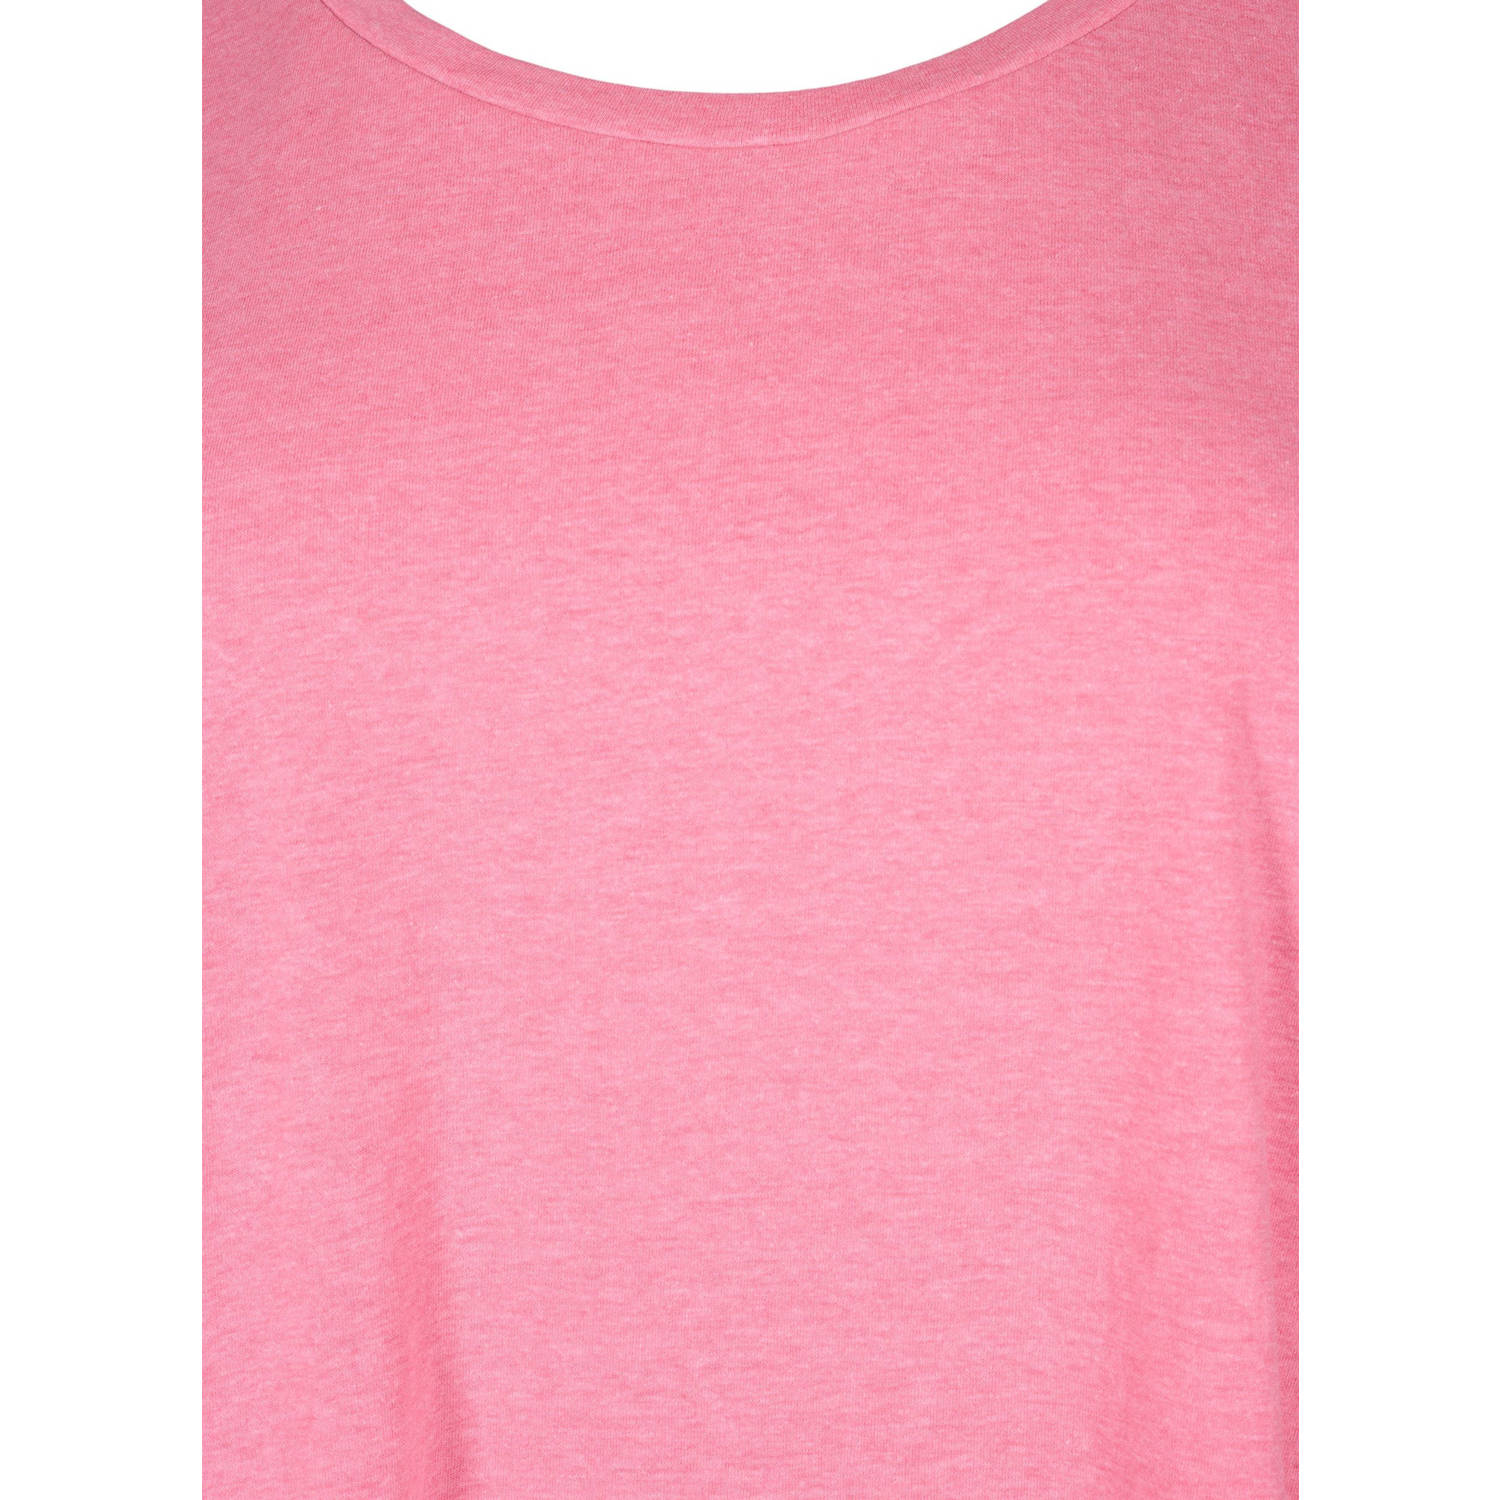 Zizzi T-shirt roze